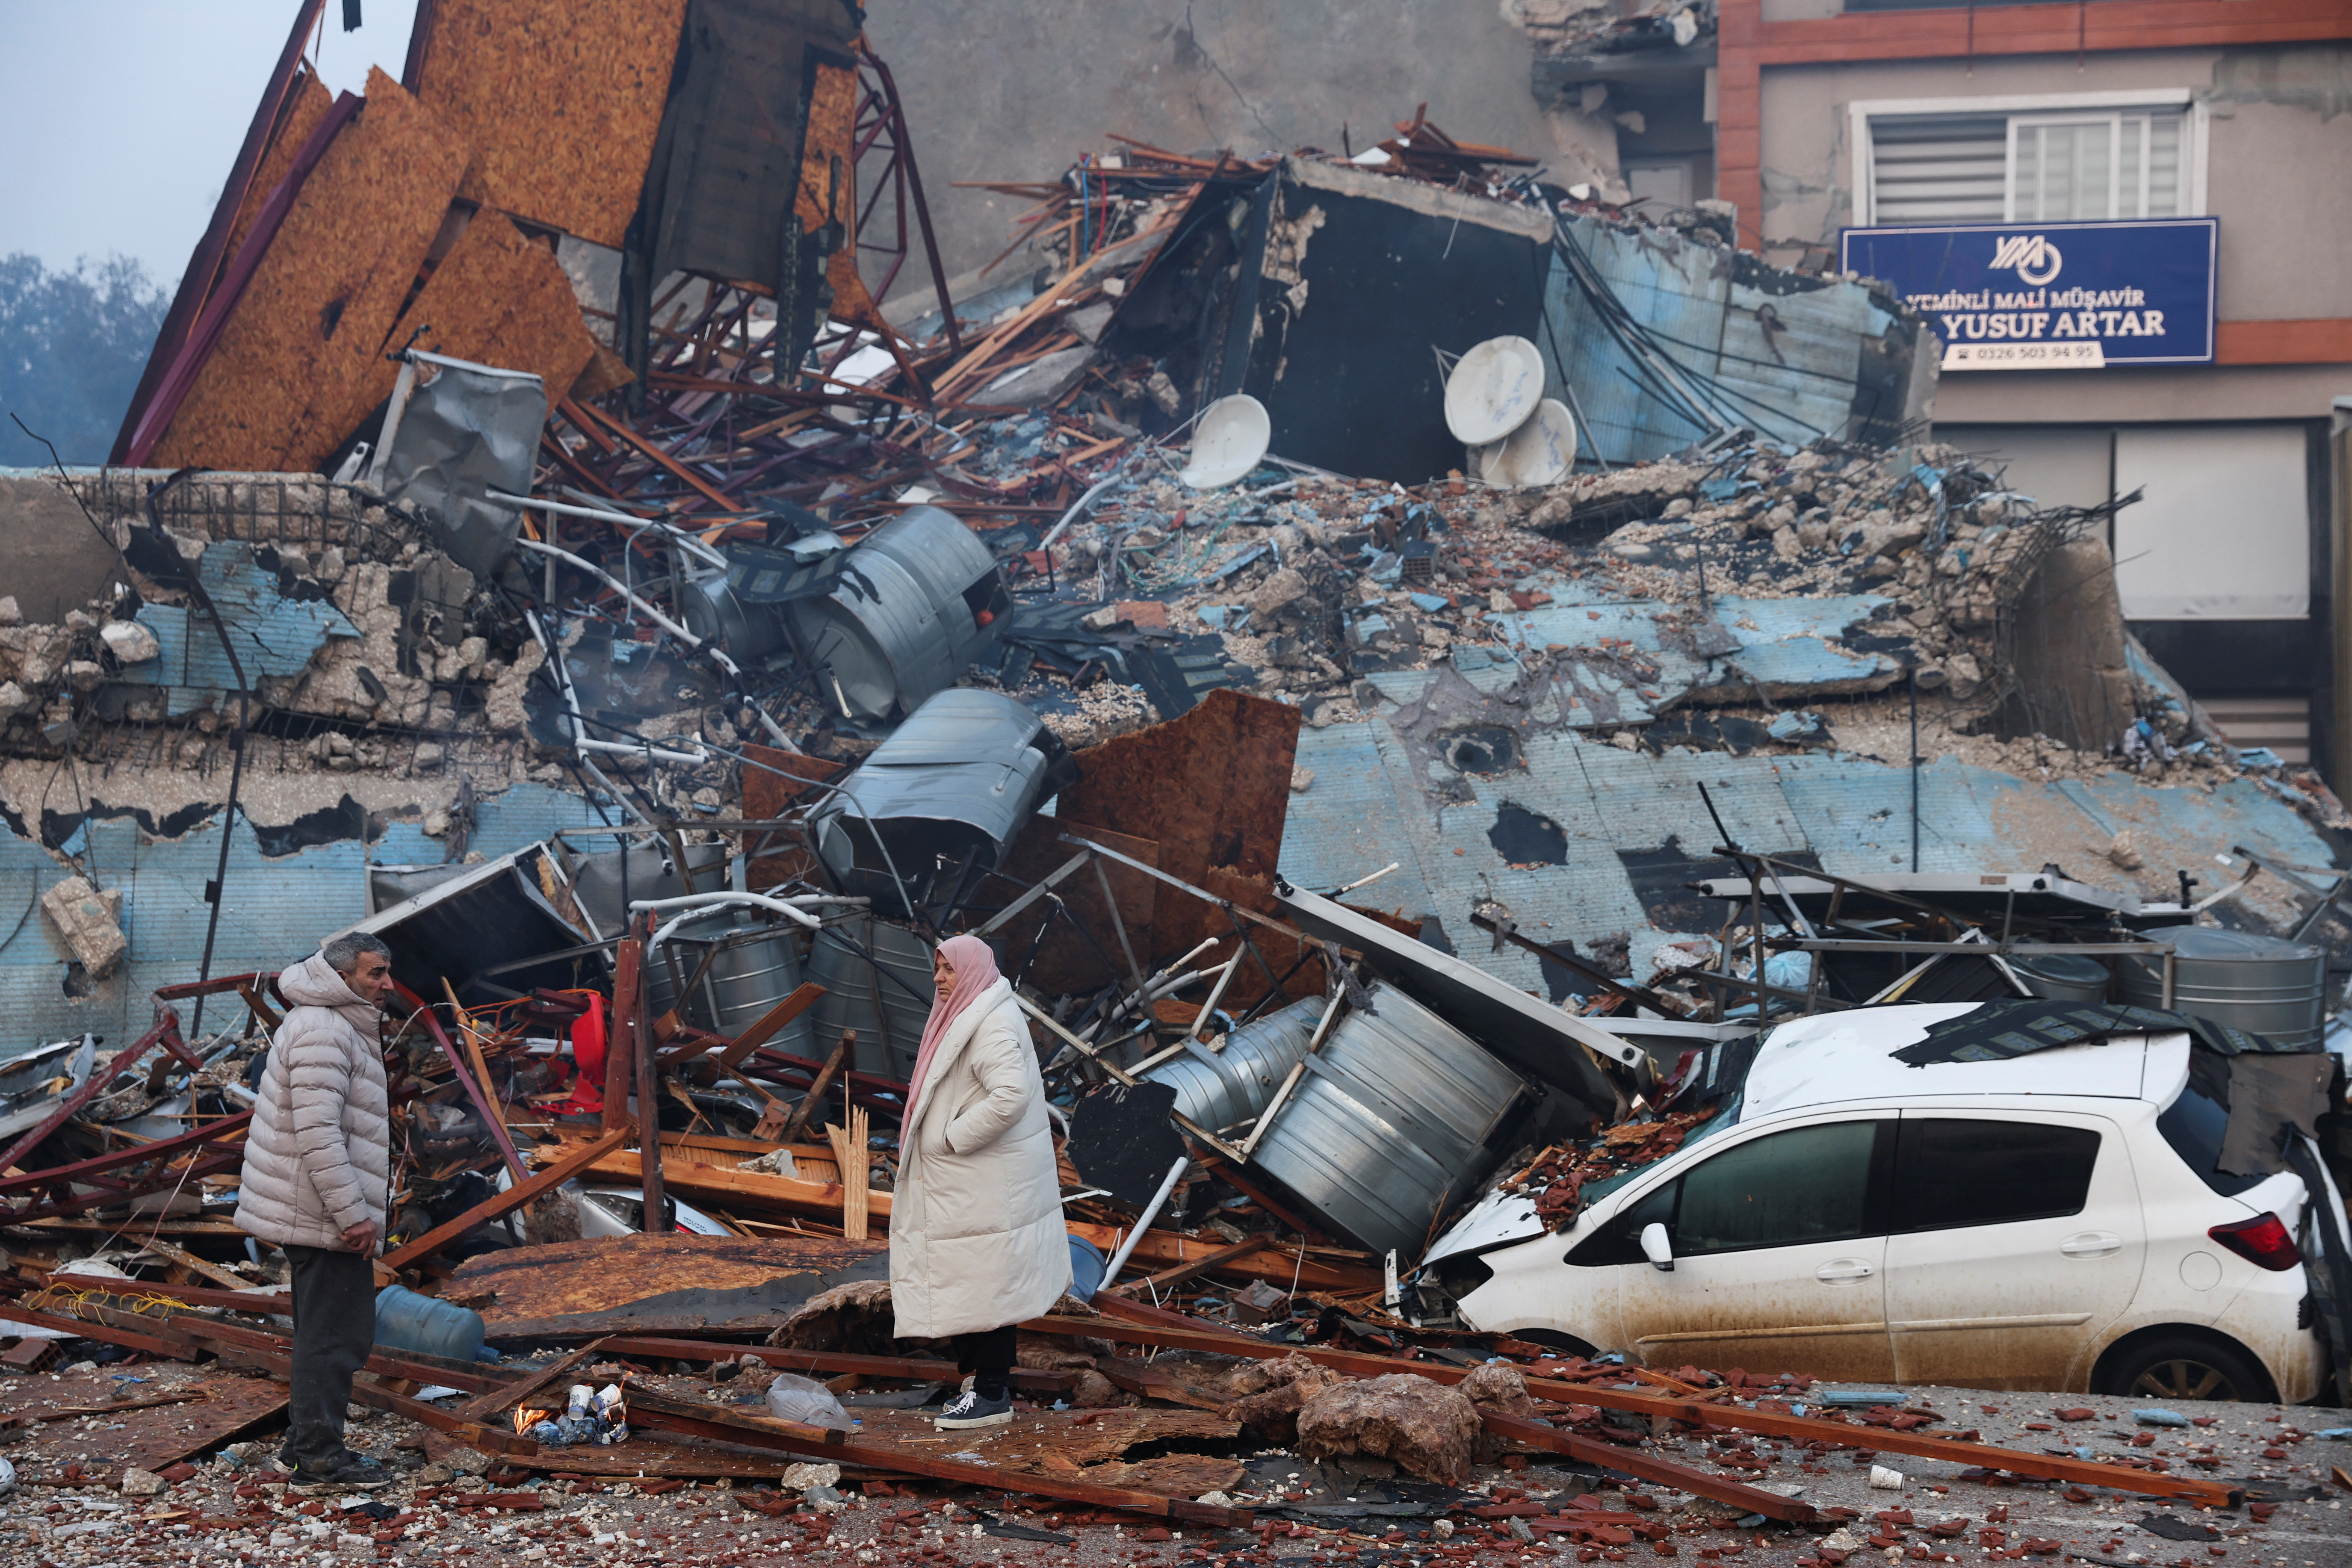 El terremoto en Turquía fue el más grave registrado en lo que va de siglo XXI. (REUTERS/Umit Bektas)